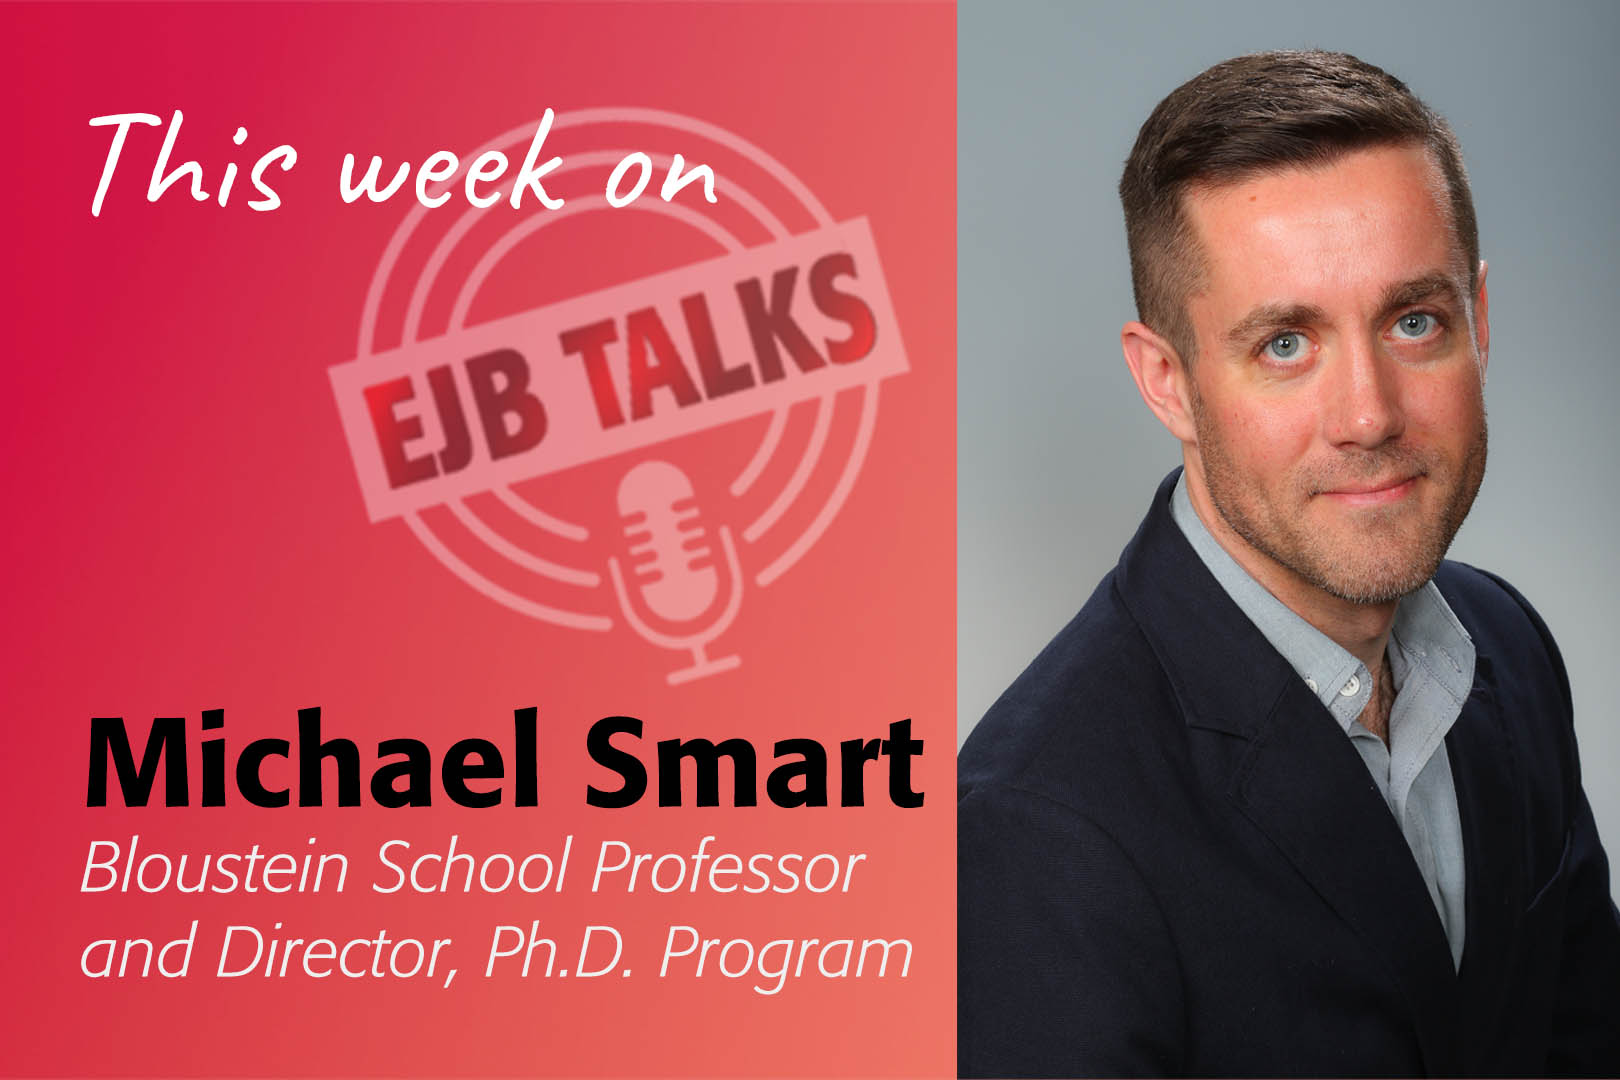 EJB Talks Mike Smart